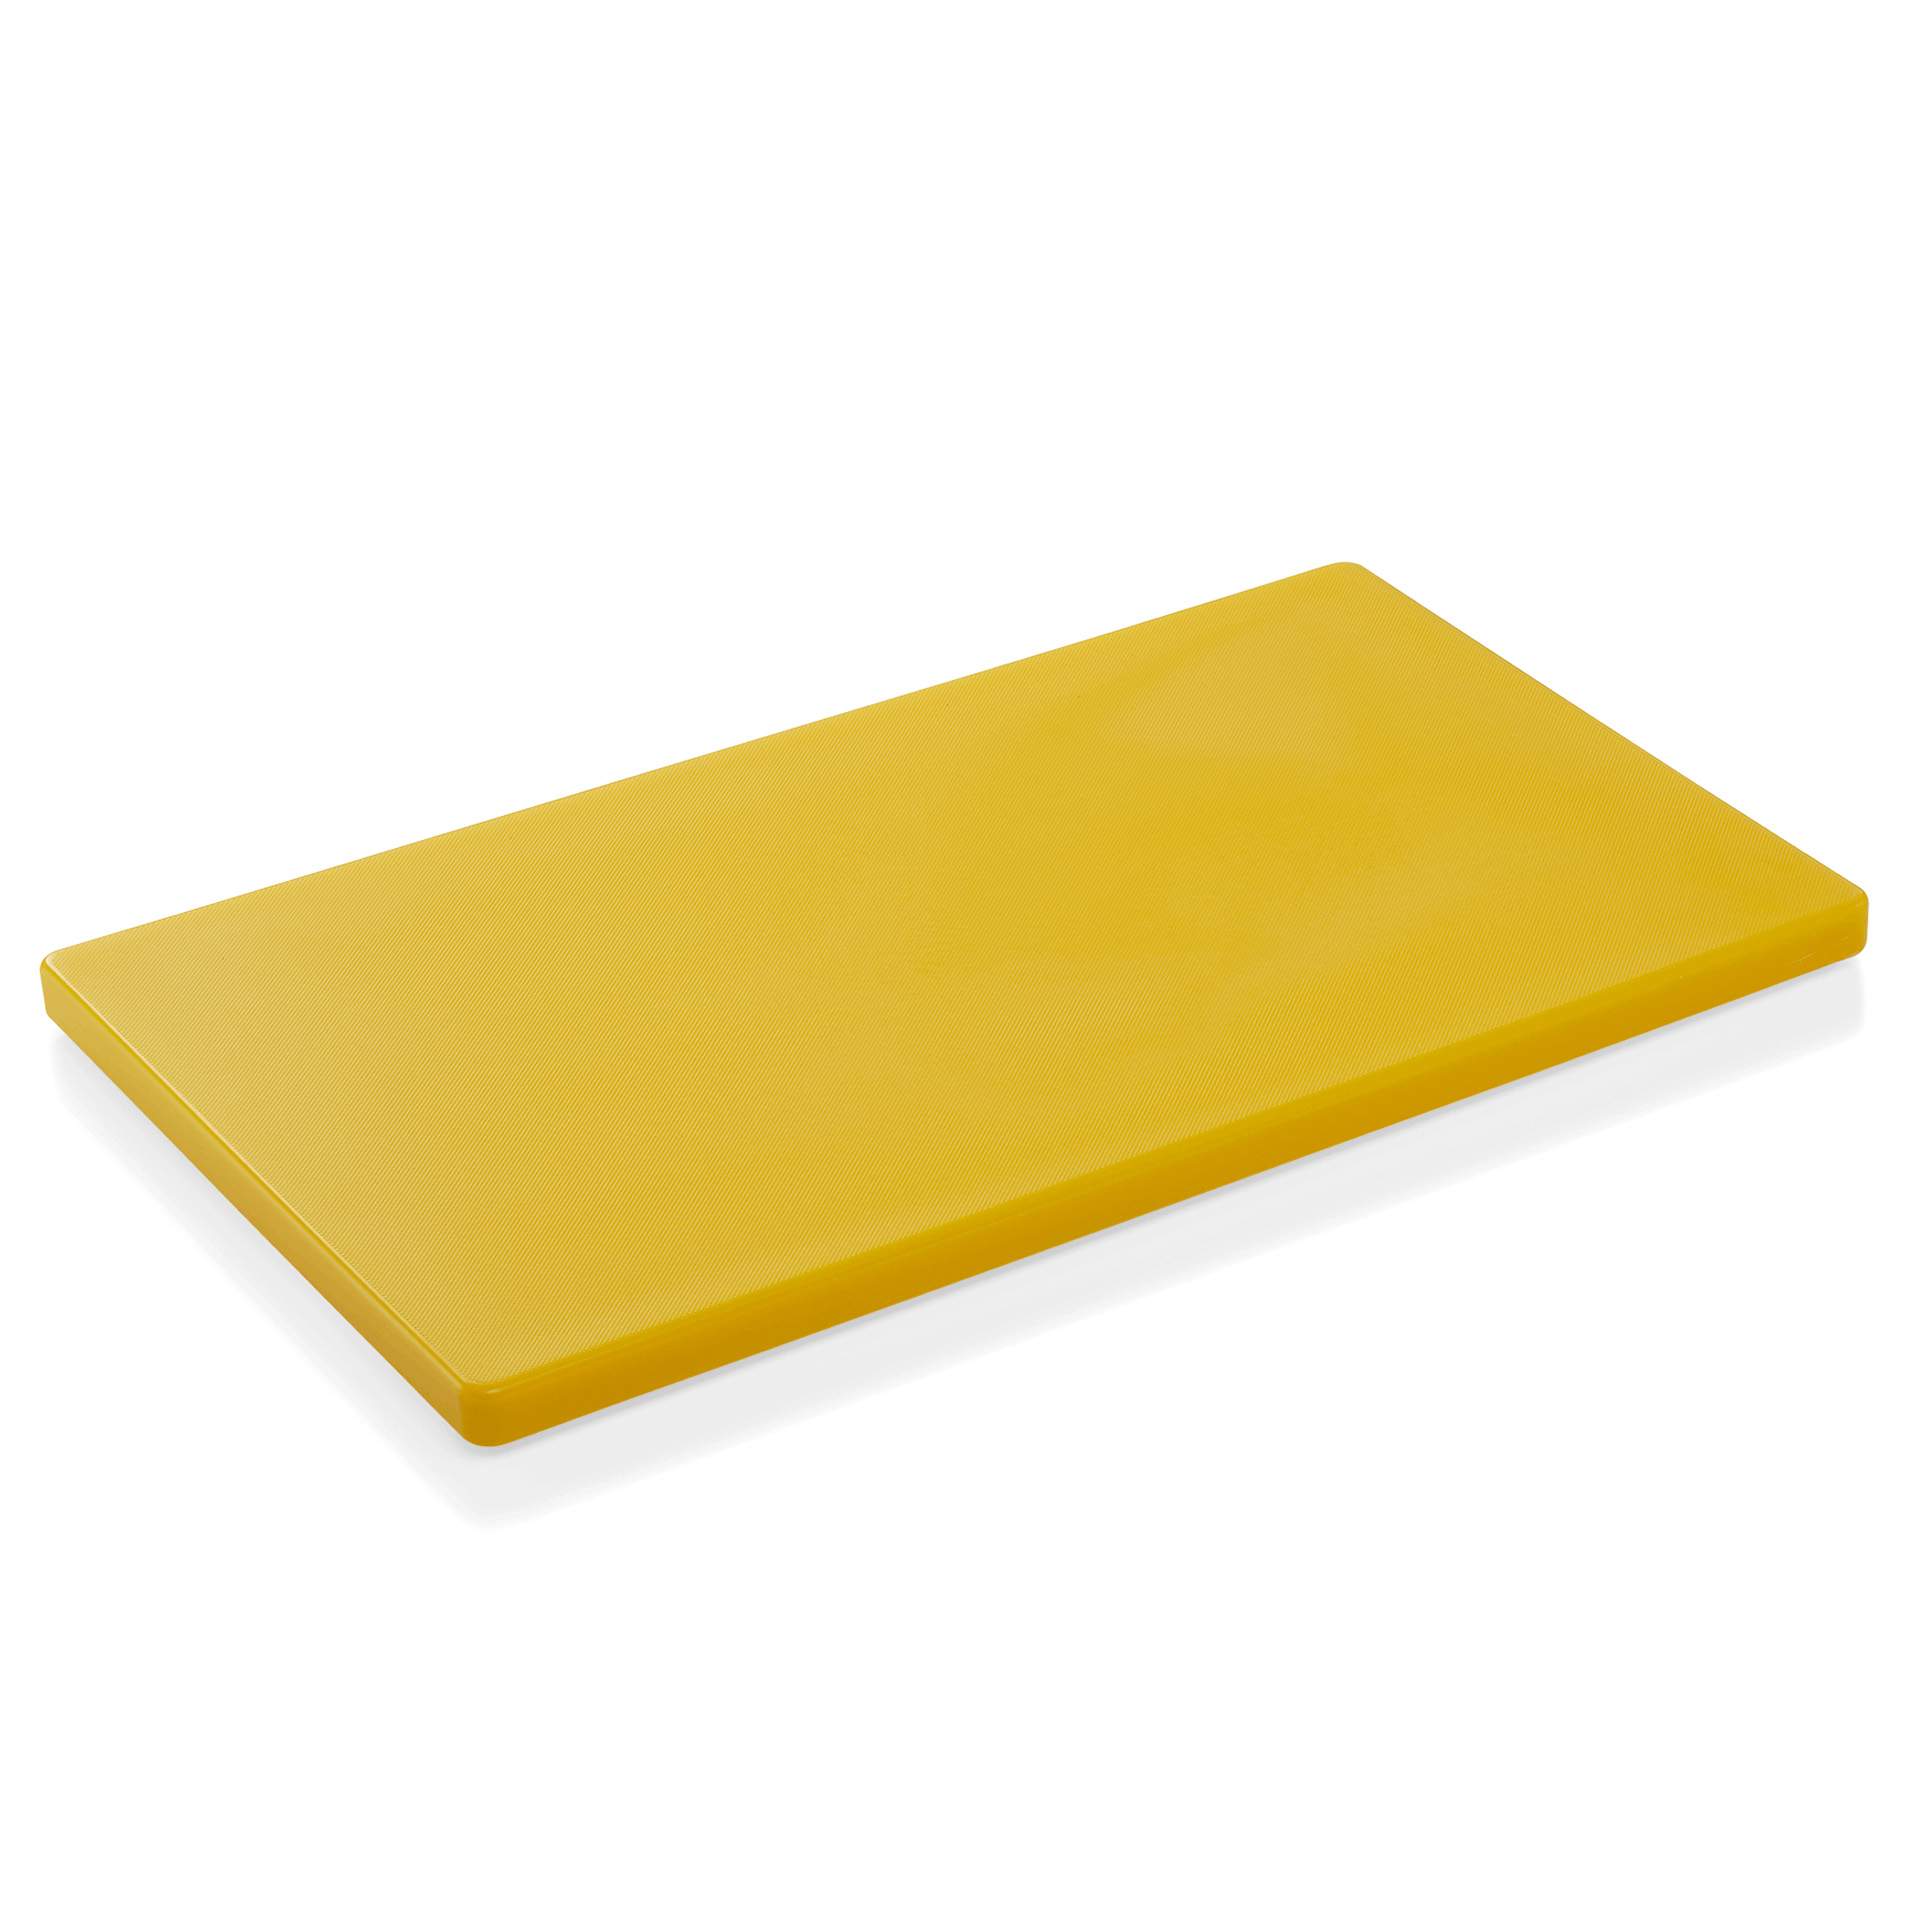 HACCP Schneidbrett - mit rutschhemmenden Füßen - gelb - Abm. 50 x 30 x 2 cm - Polyethylen